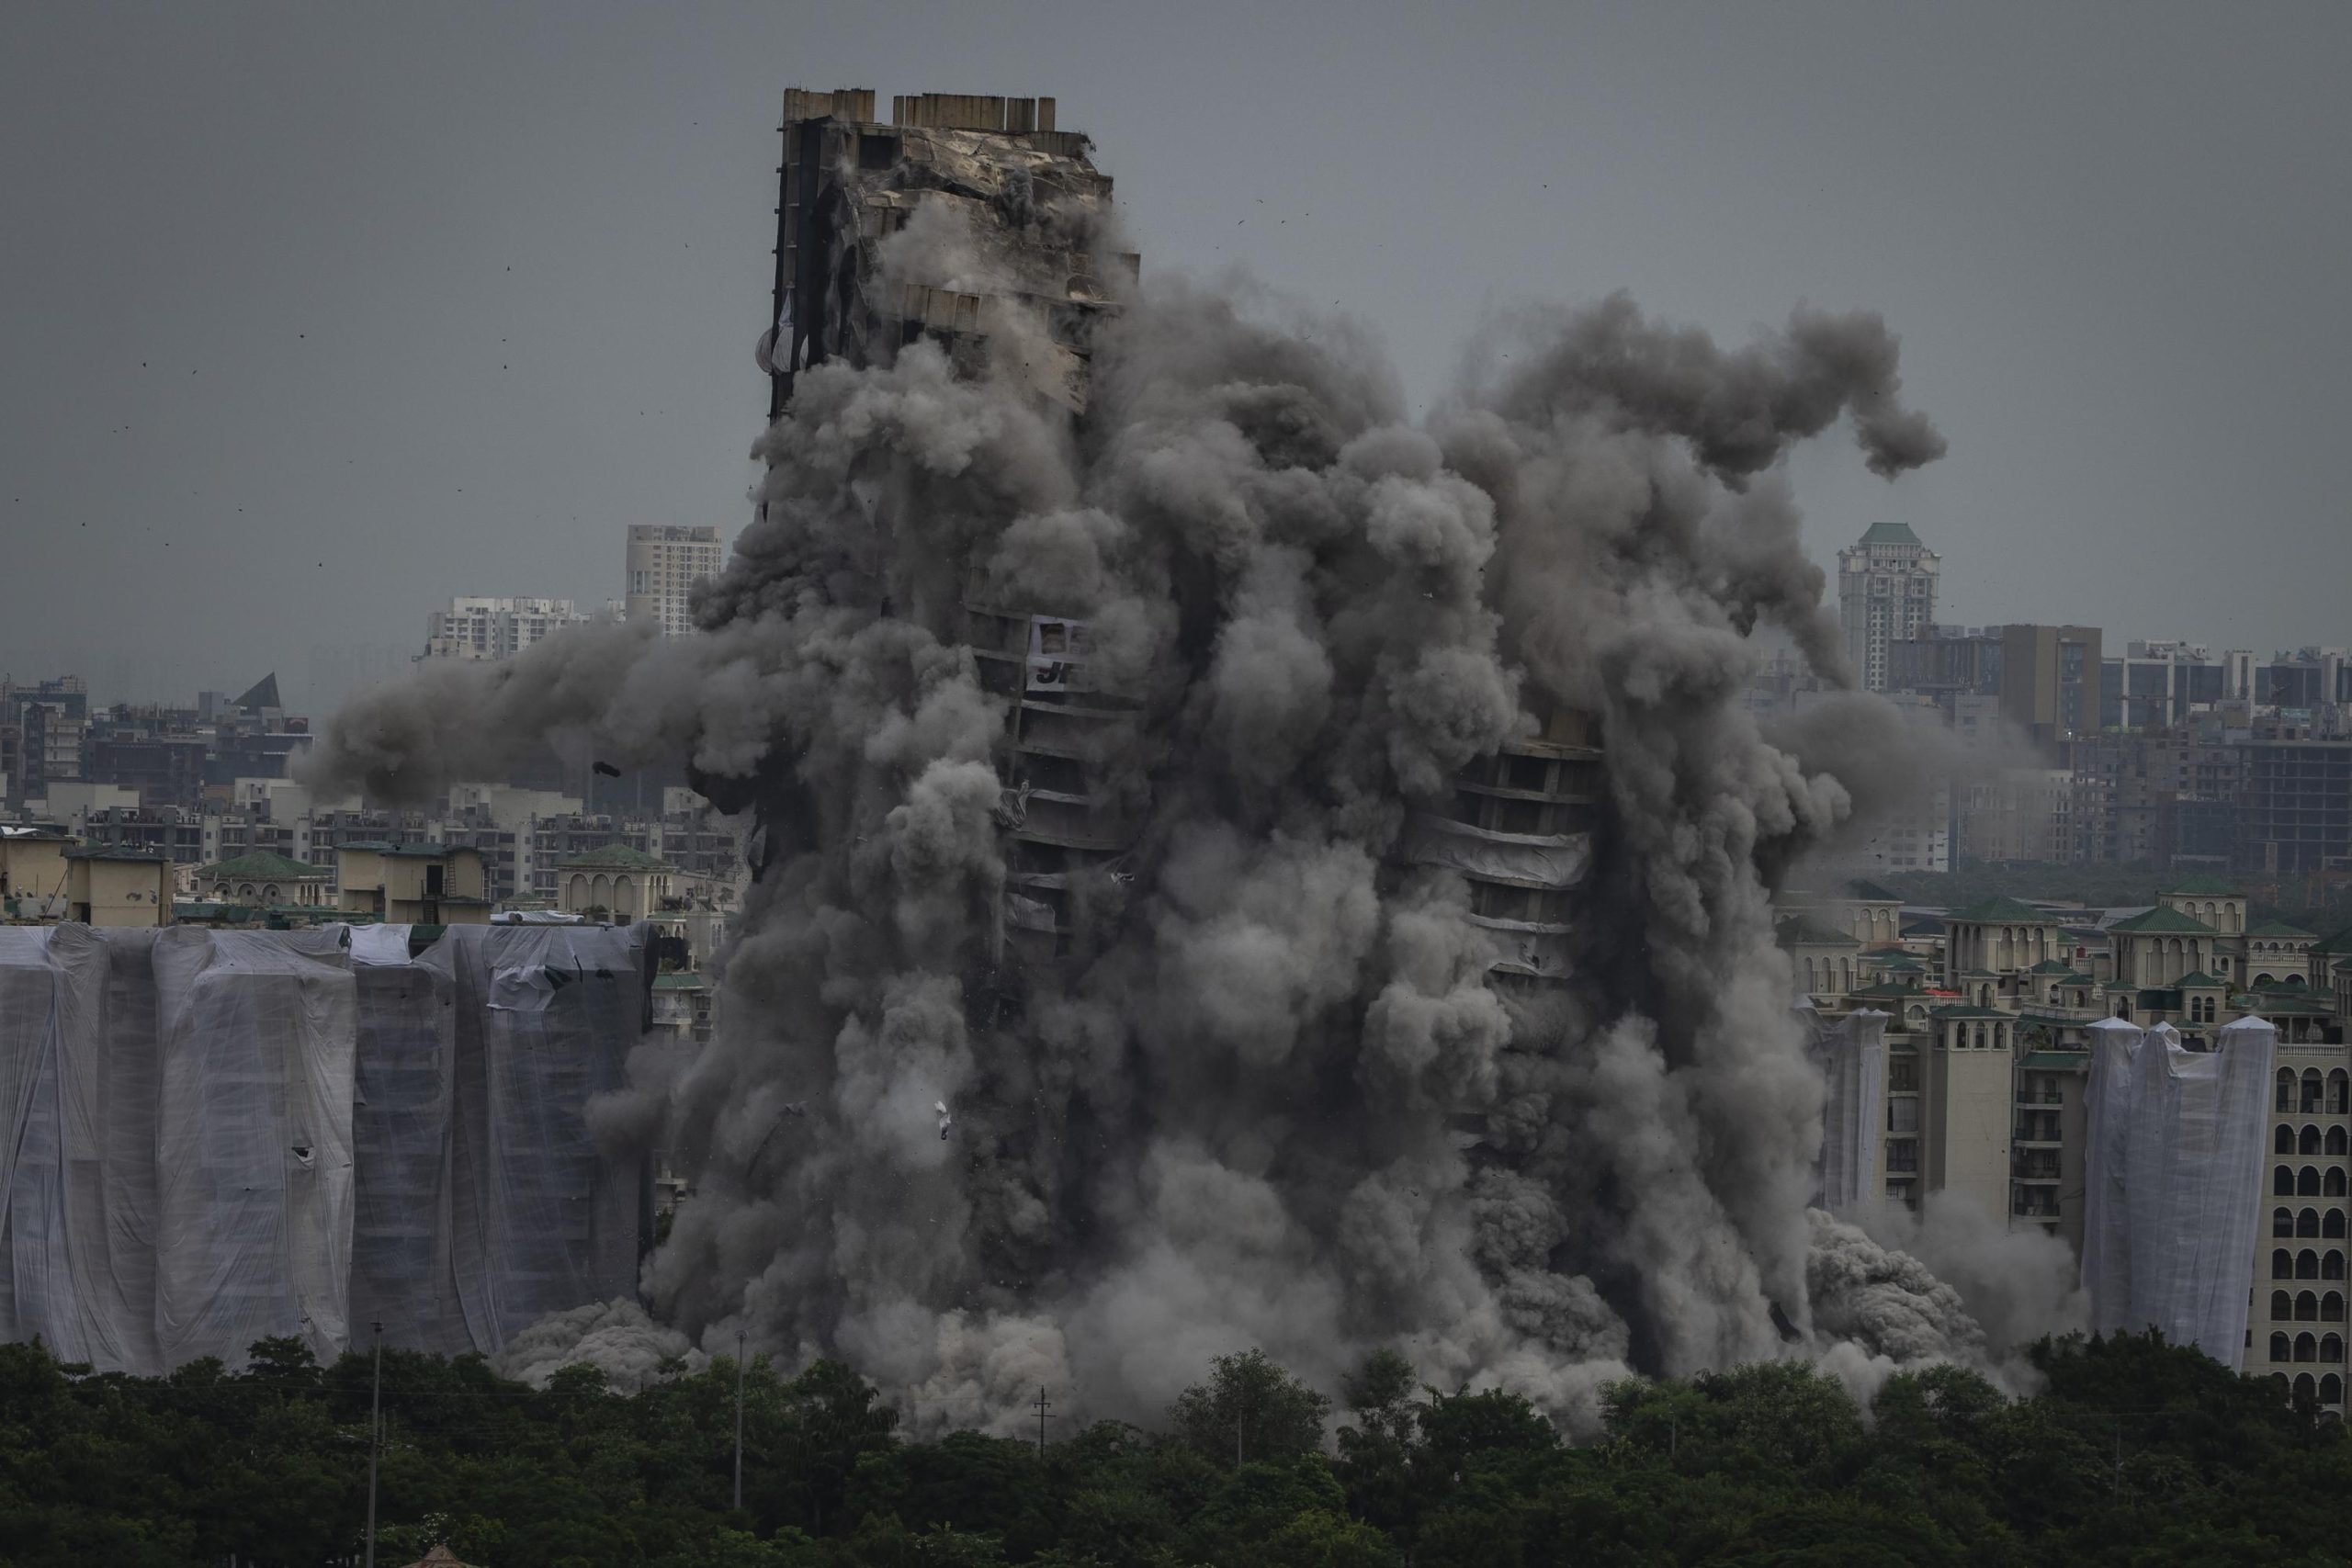 Dos torres de gran altura demolidas en India por violar leyes